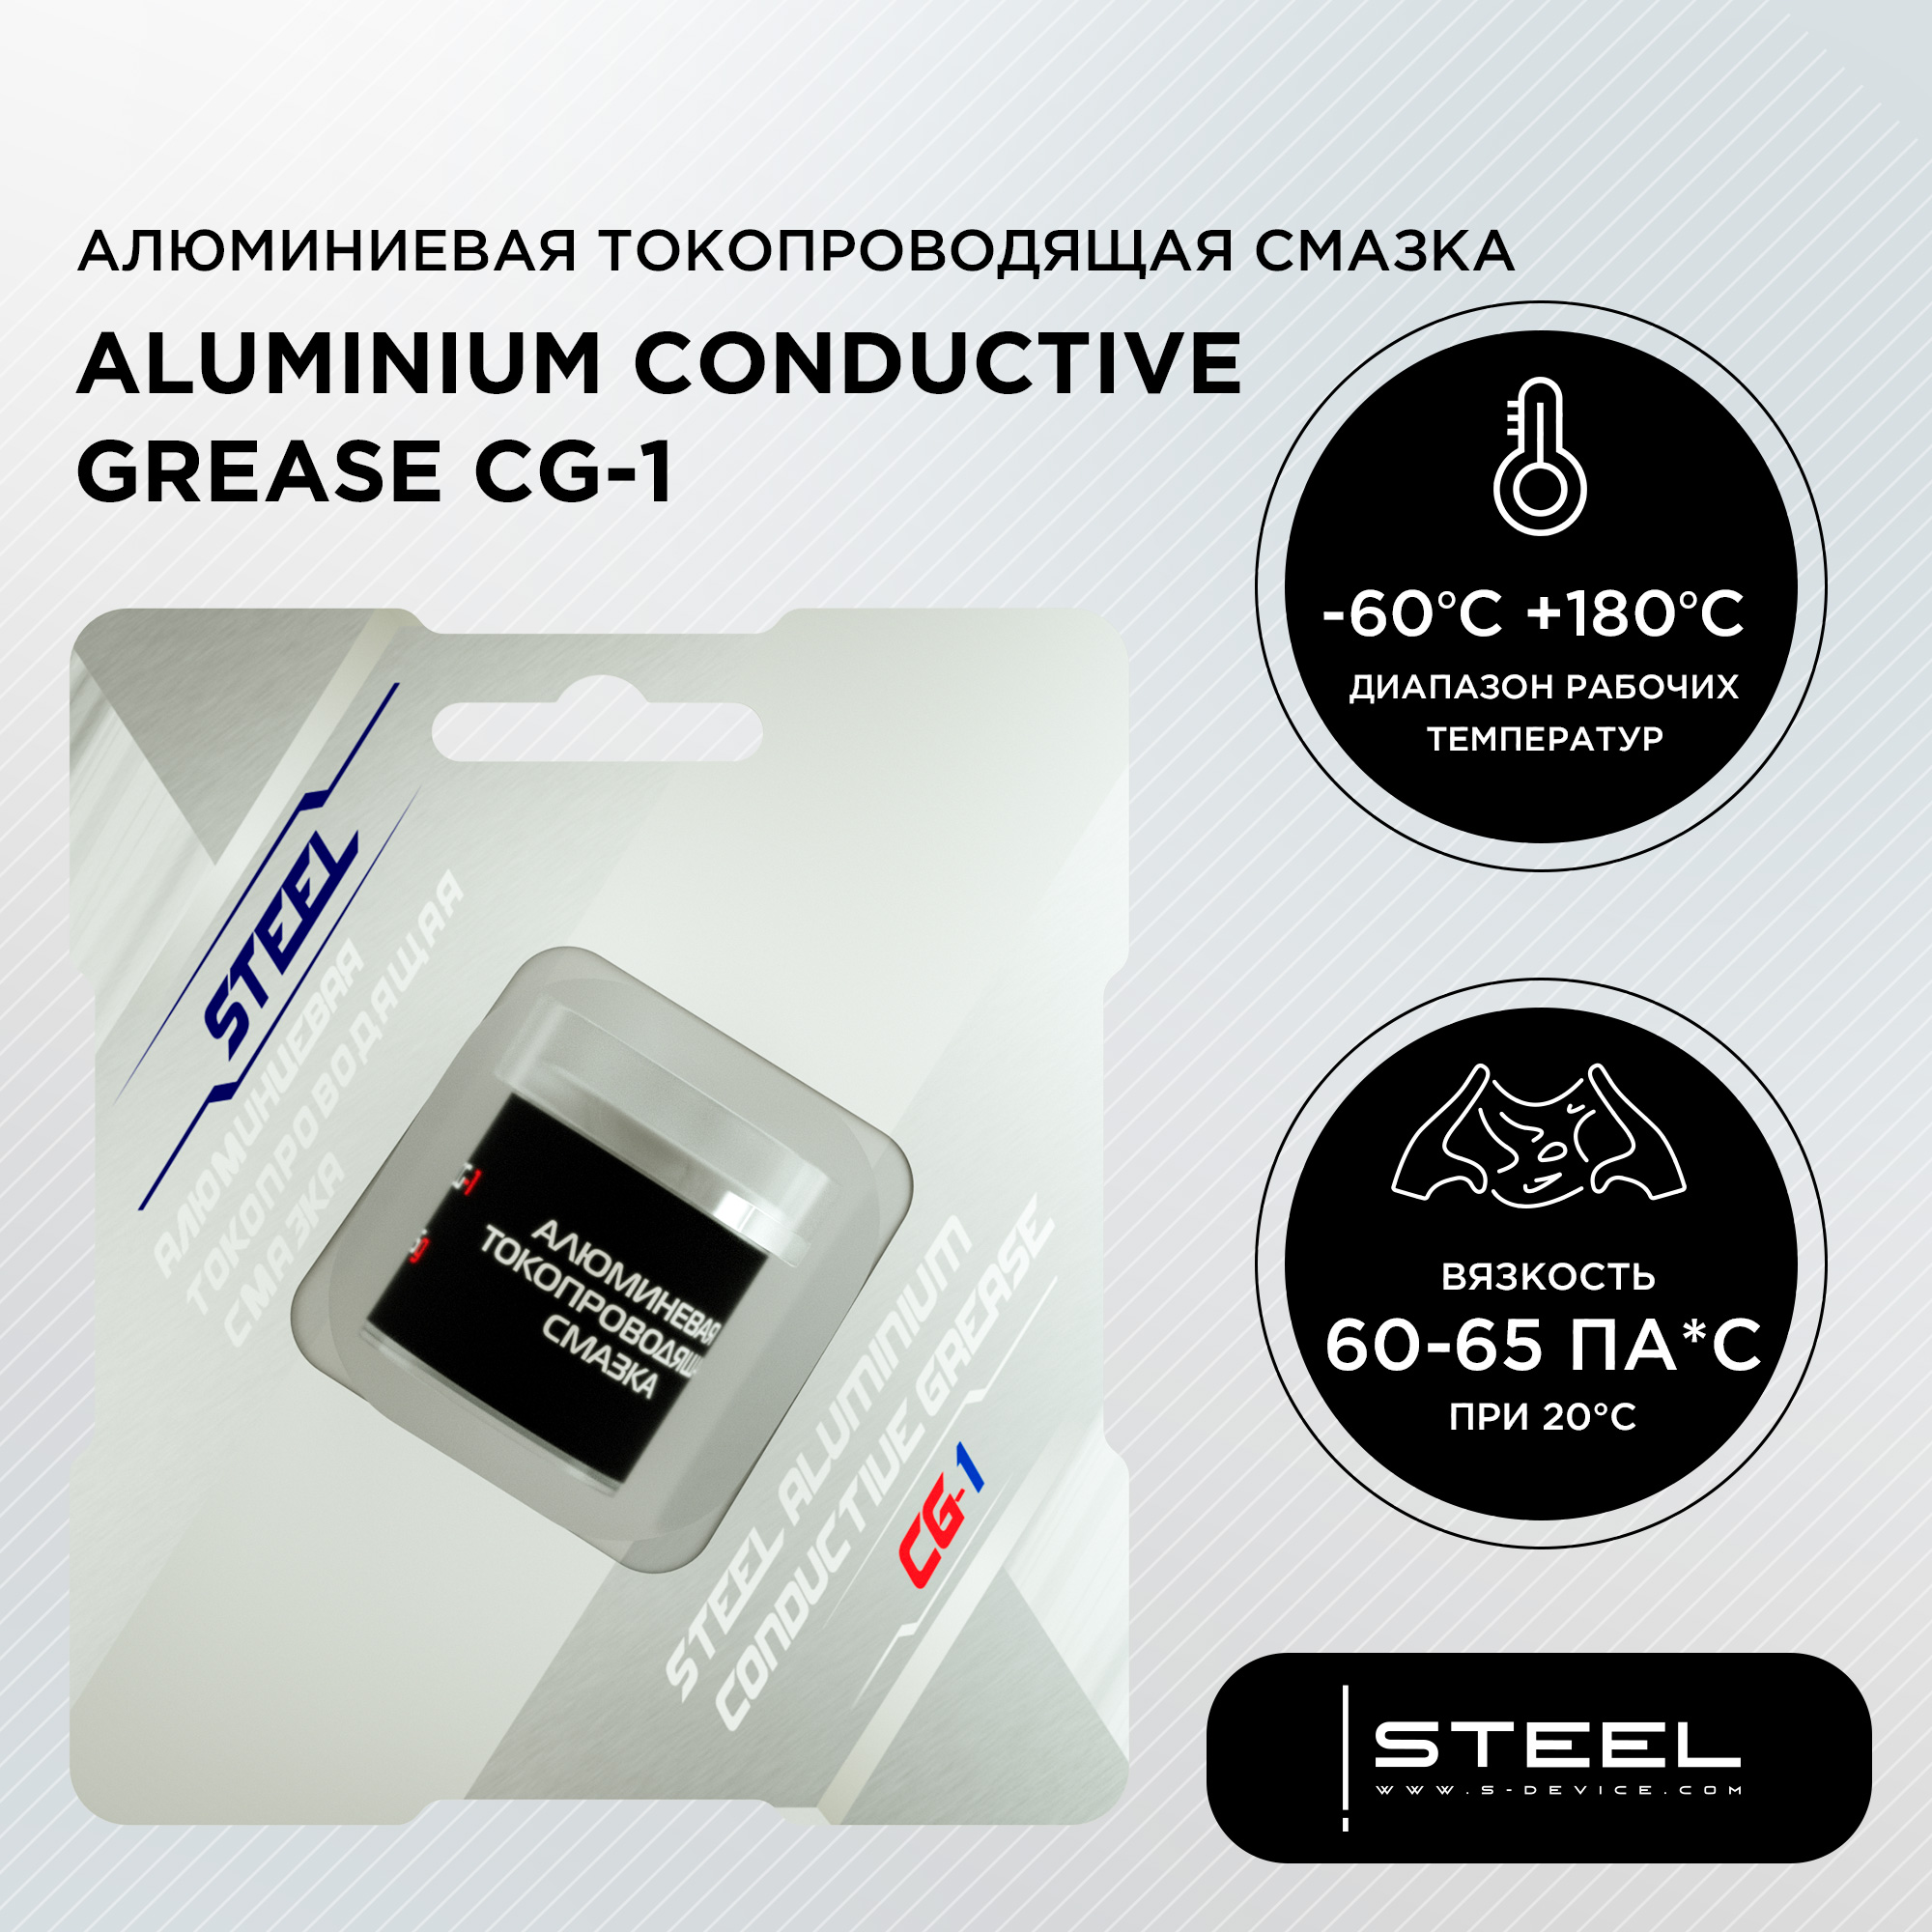 Токопроводящая смазка Steel CG-1 HOME 5g, купить в Москве, цены в интернет-магазинах на Мегамаркет